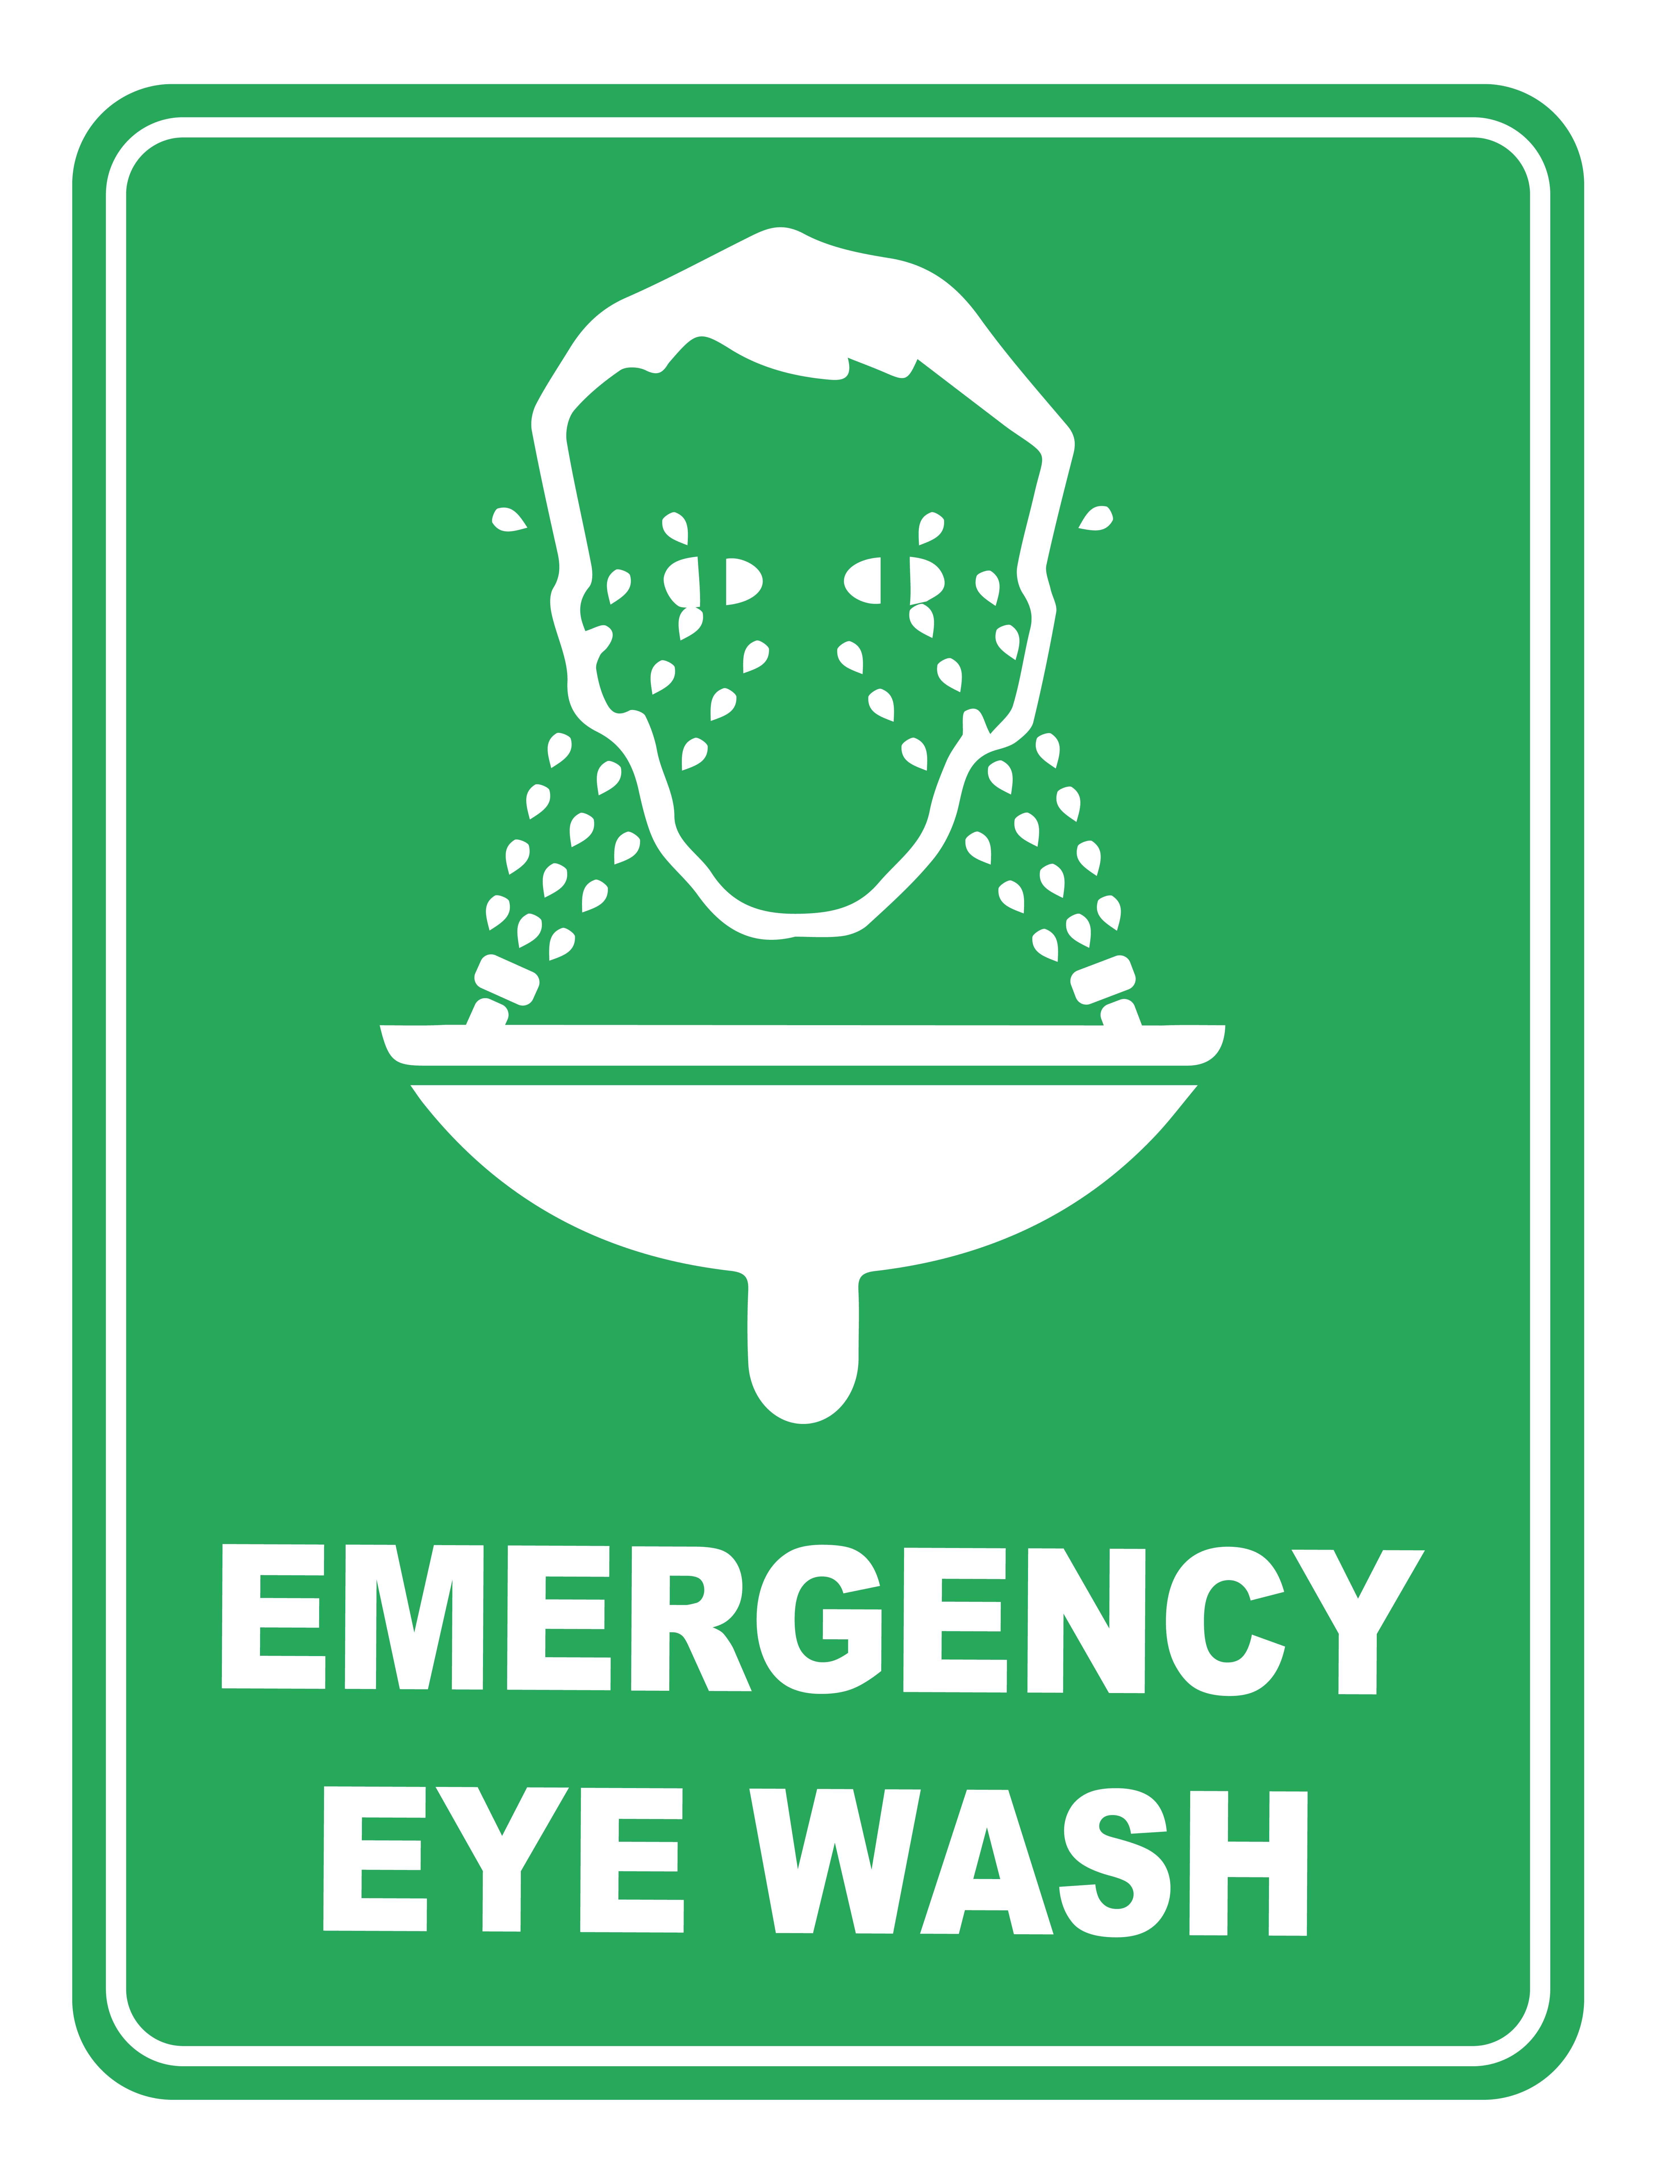 Emergency Eye Wash Emergency Safety Sign - The Safety & Civil